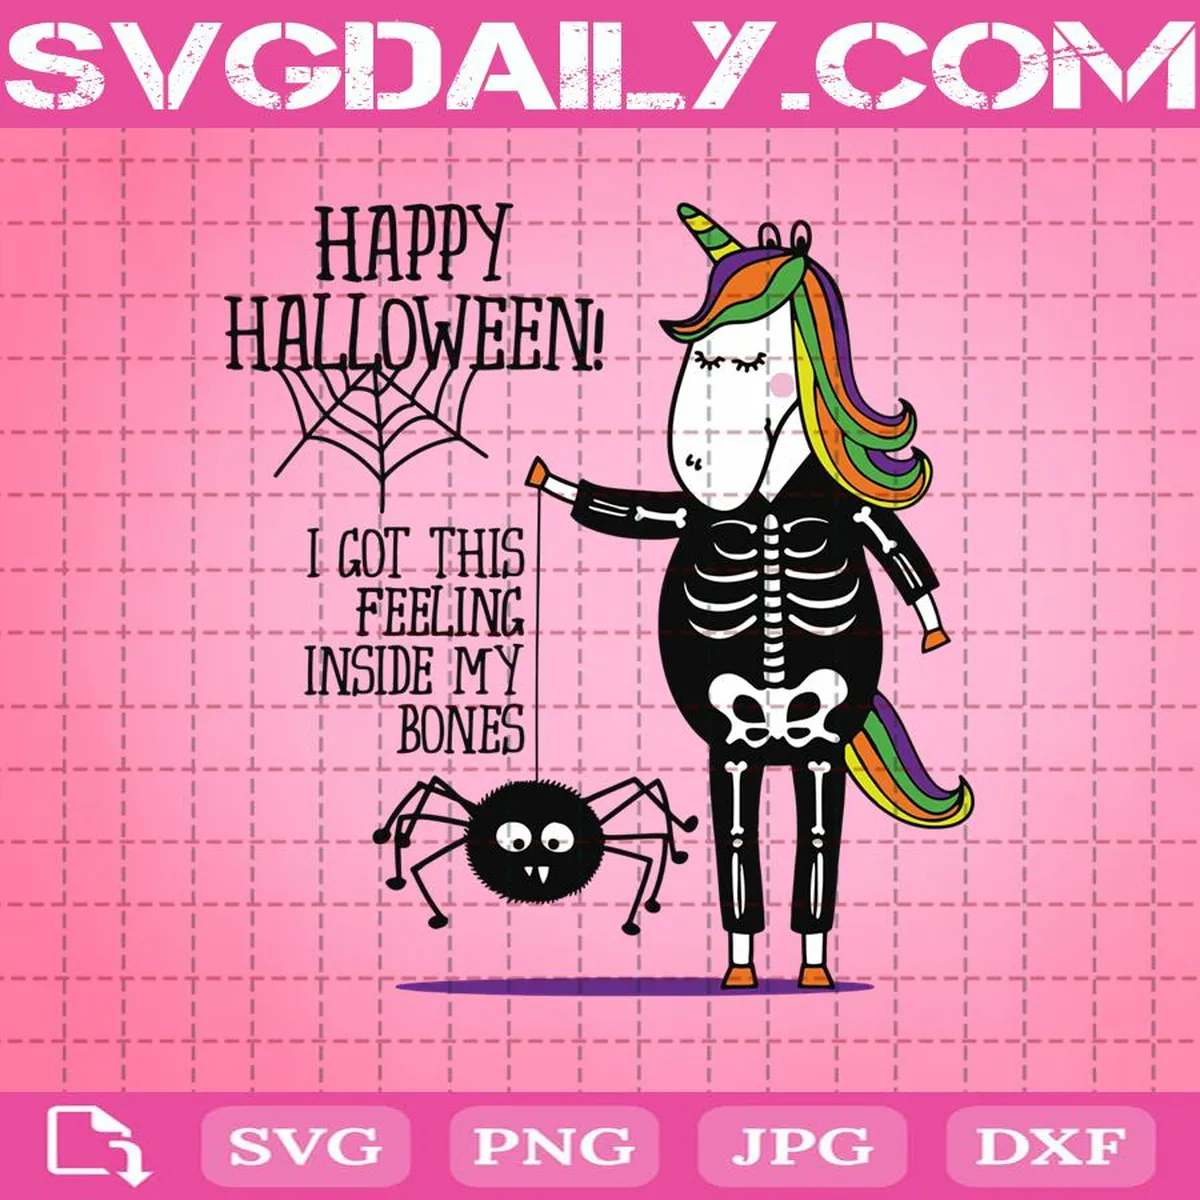 Happy Halloween Unicorn Svg, I Got This FellingInside My Bones Svg, Unicorn Svg, Happy Halloween Svg, Unicorn Skeleton Svg